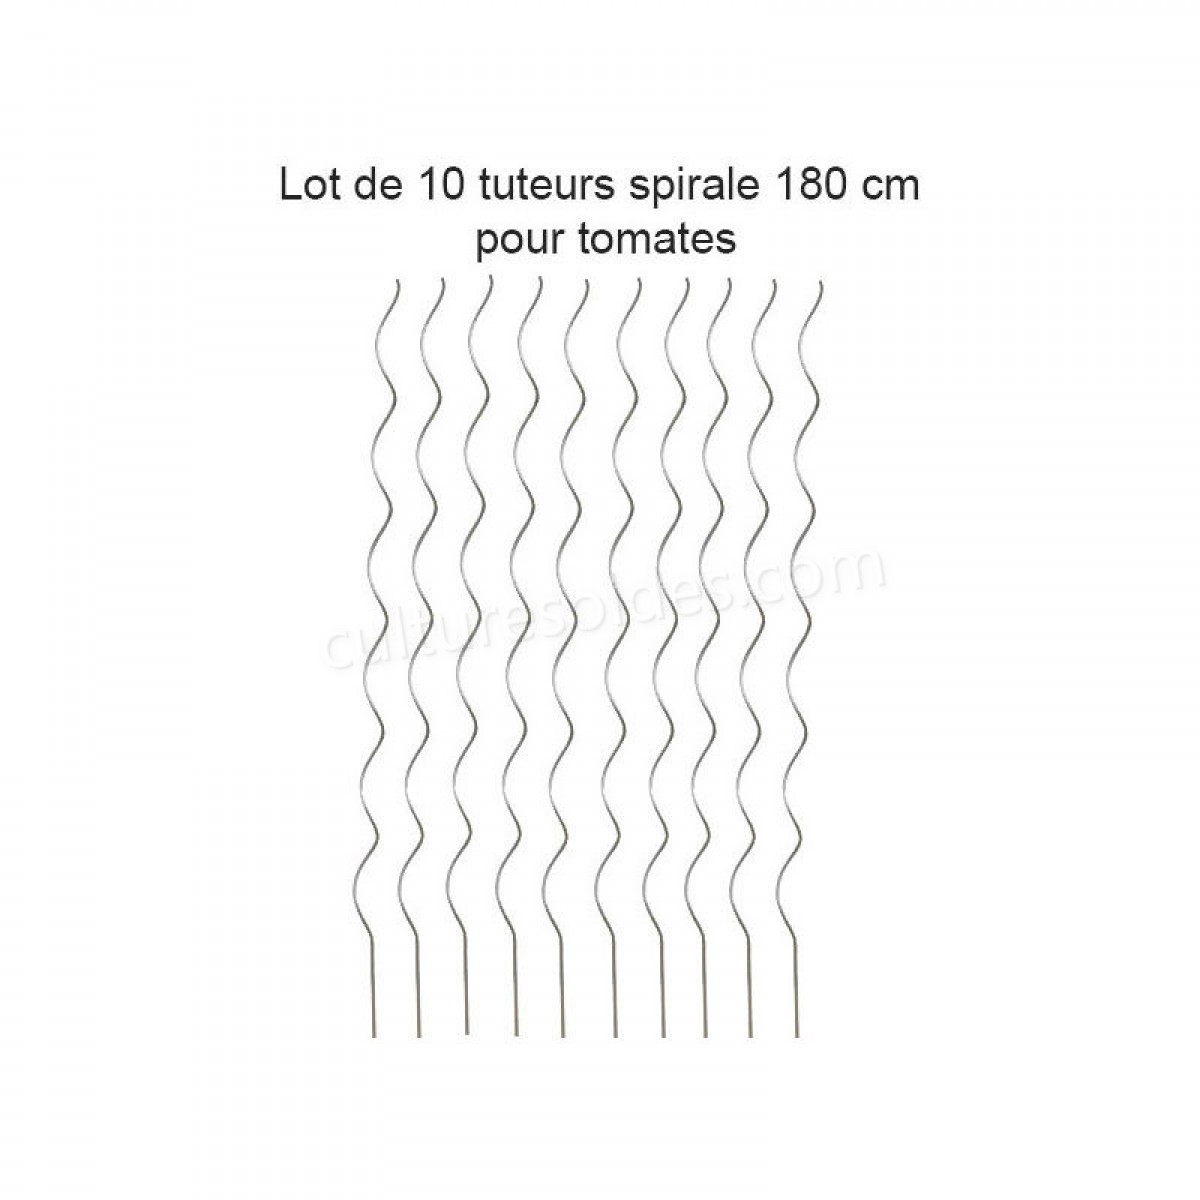 Lot de 10 Tuteurs spirale 180cm pour plants de tomates en acier galvanisé soldes en ligne - Lot de 10 Tuteurs spirale 180cm pour plants de tomates en acier galvanisé soldes en ligne